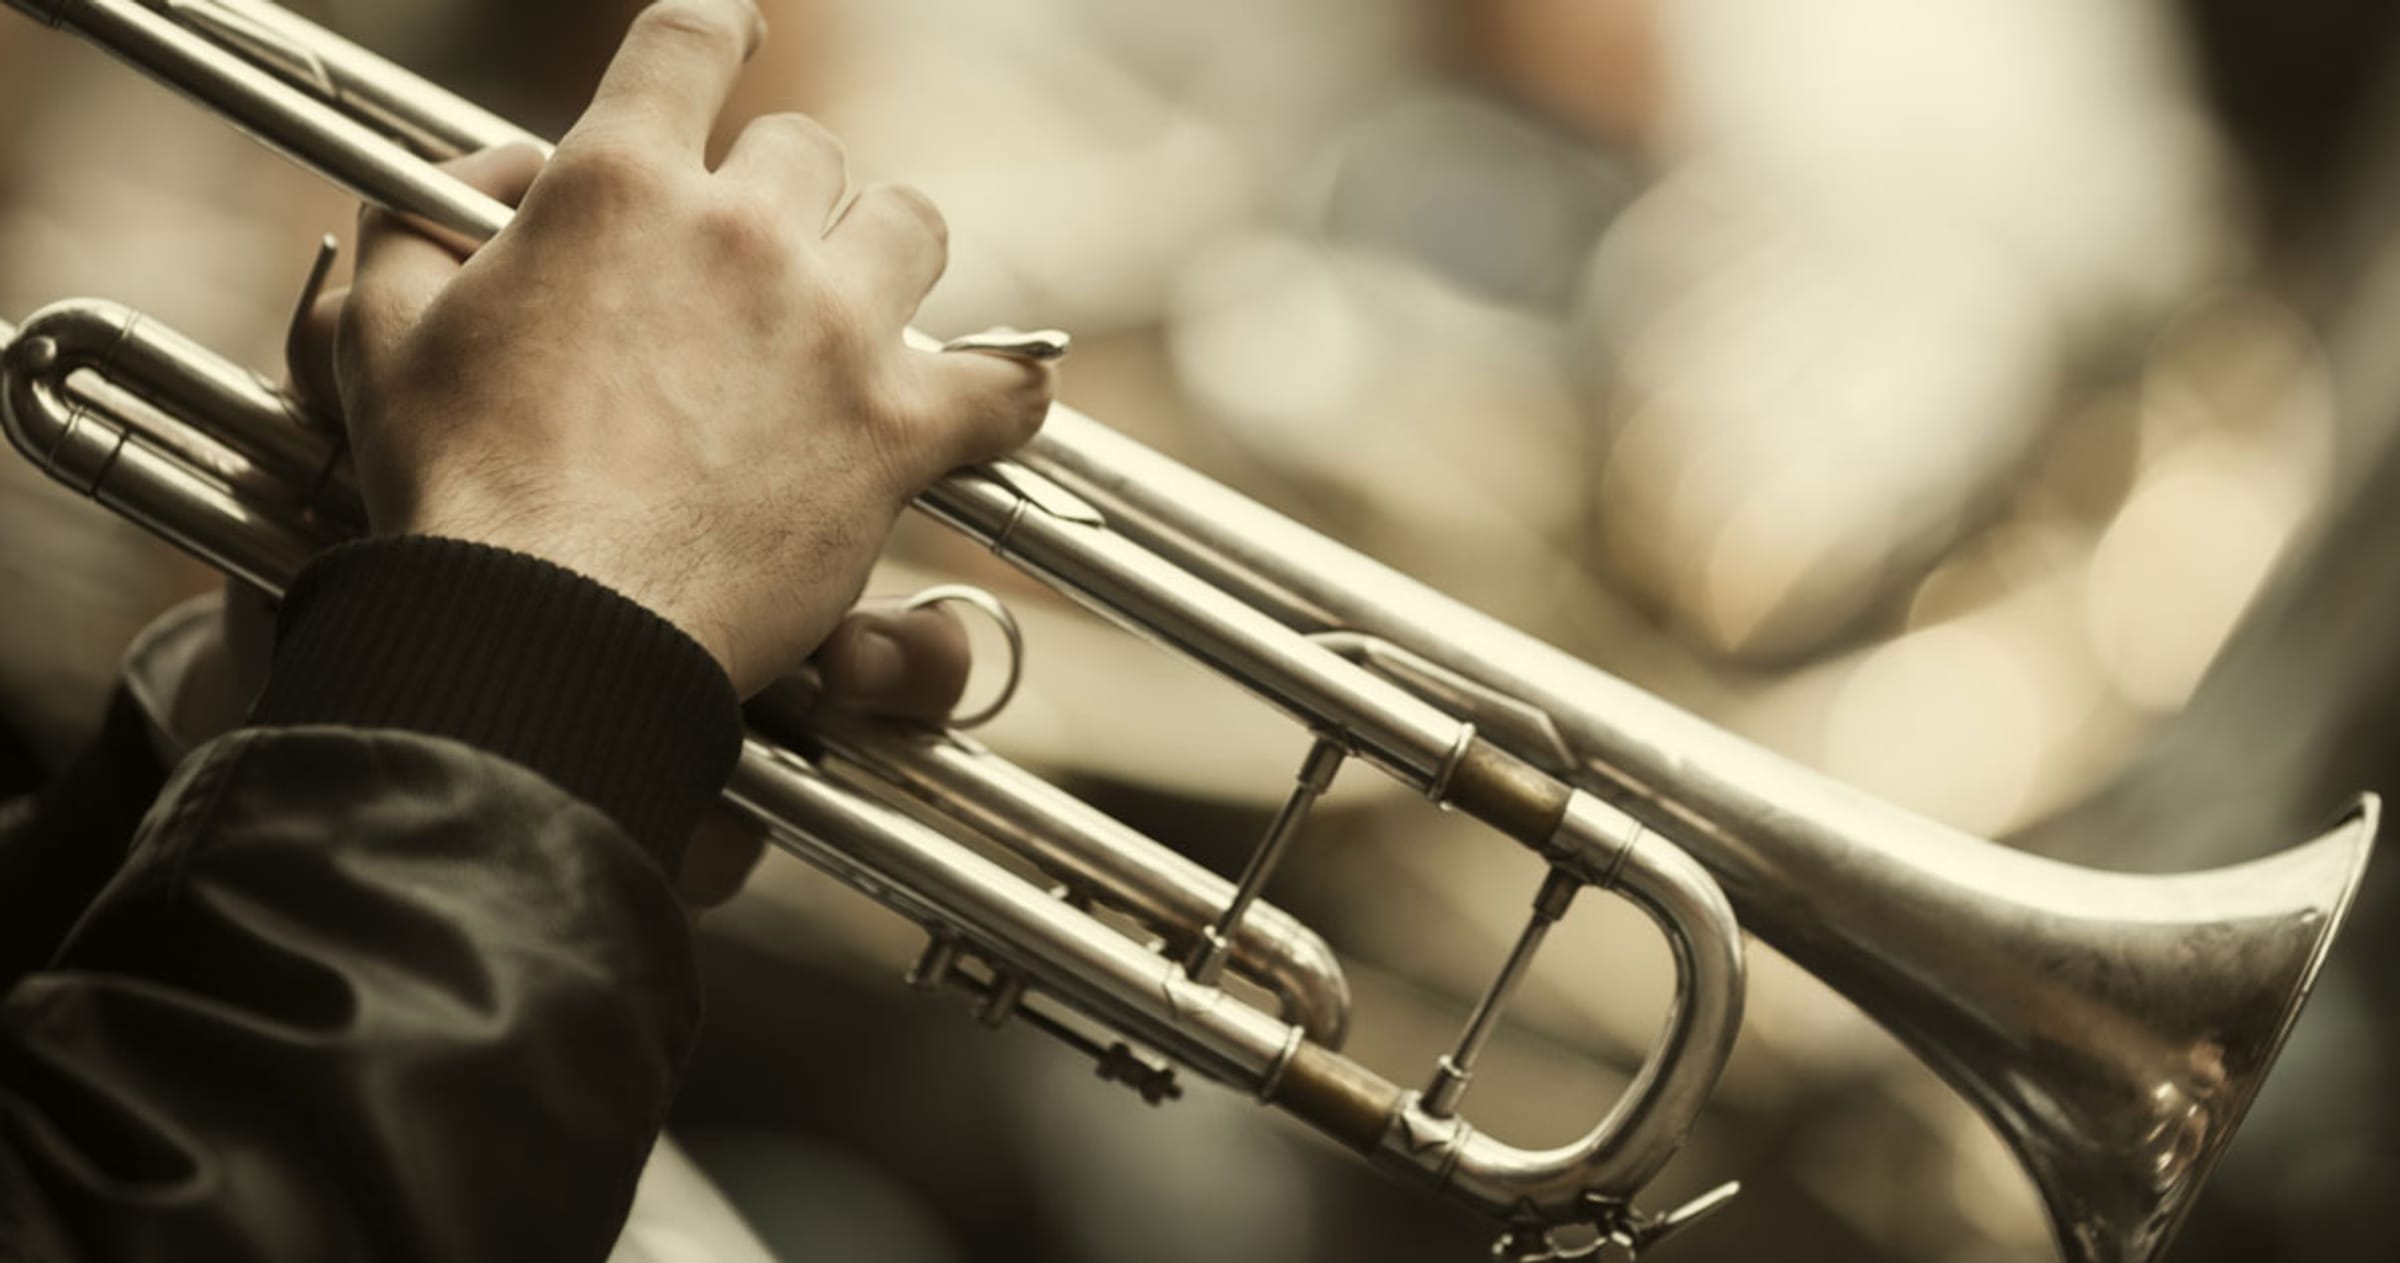 Brass – Musica Instruments